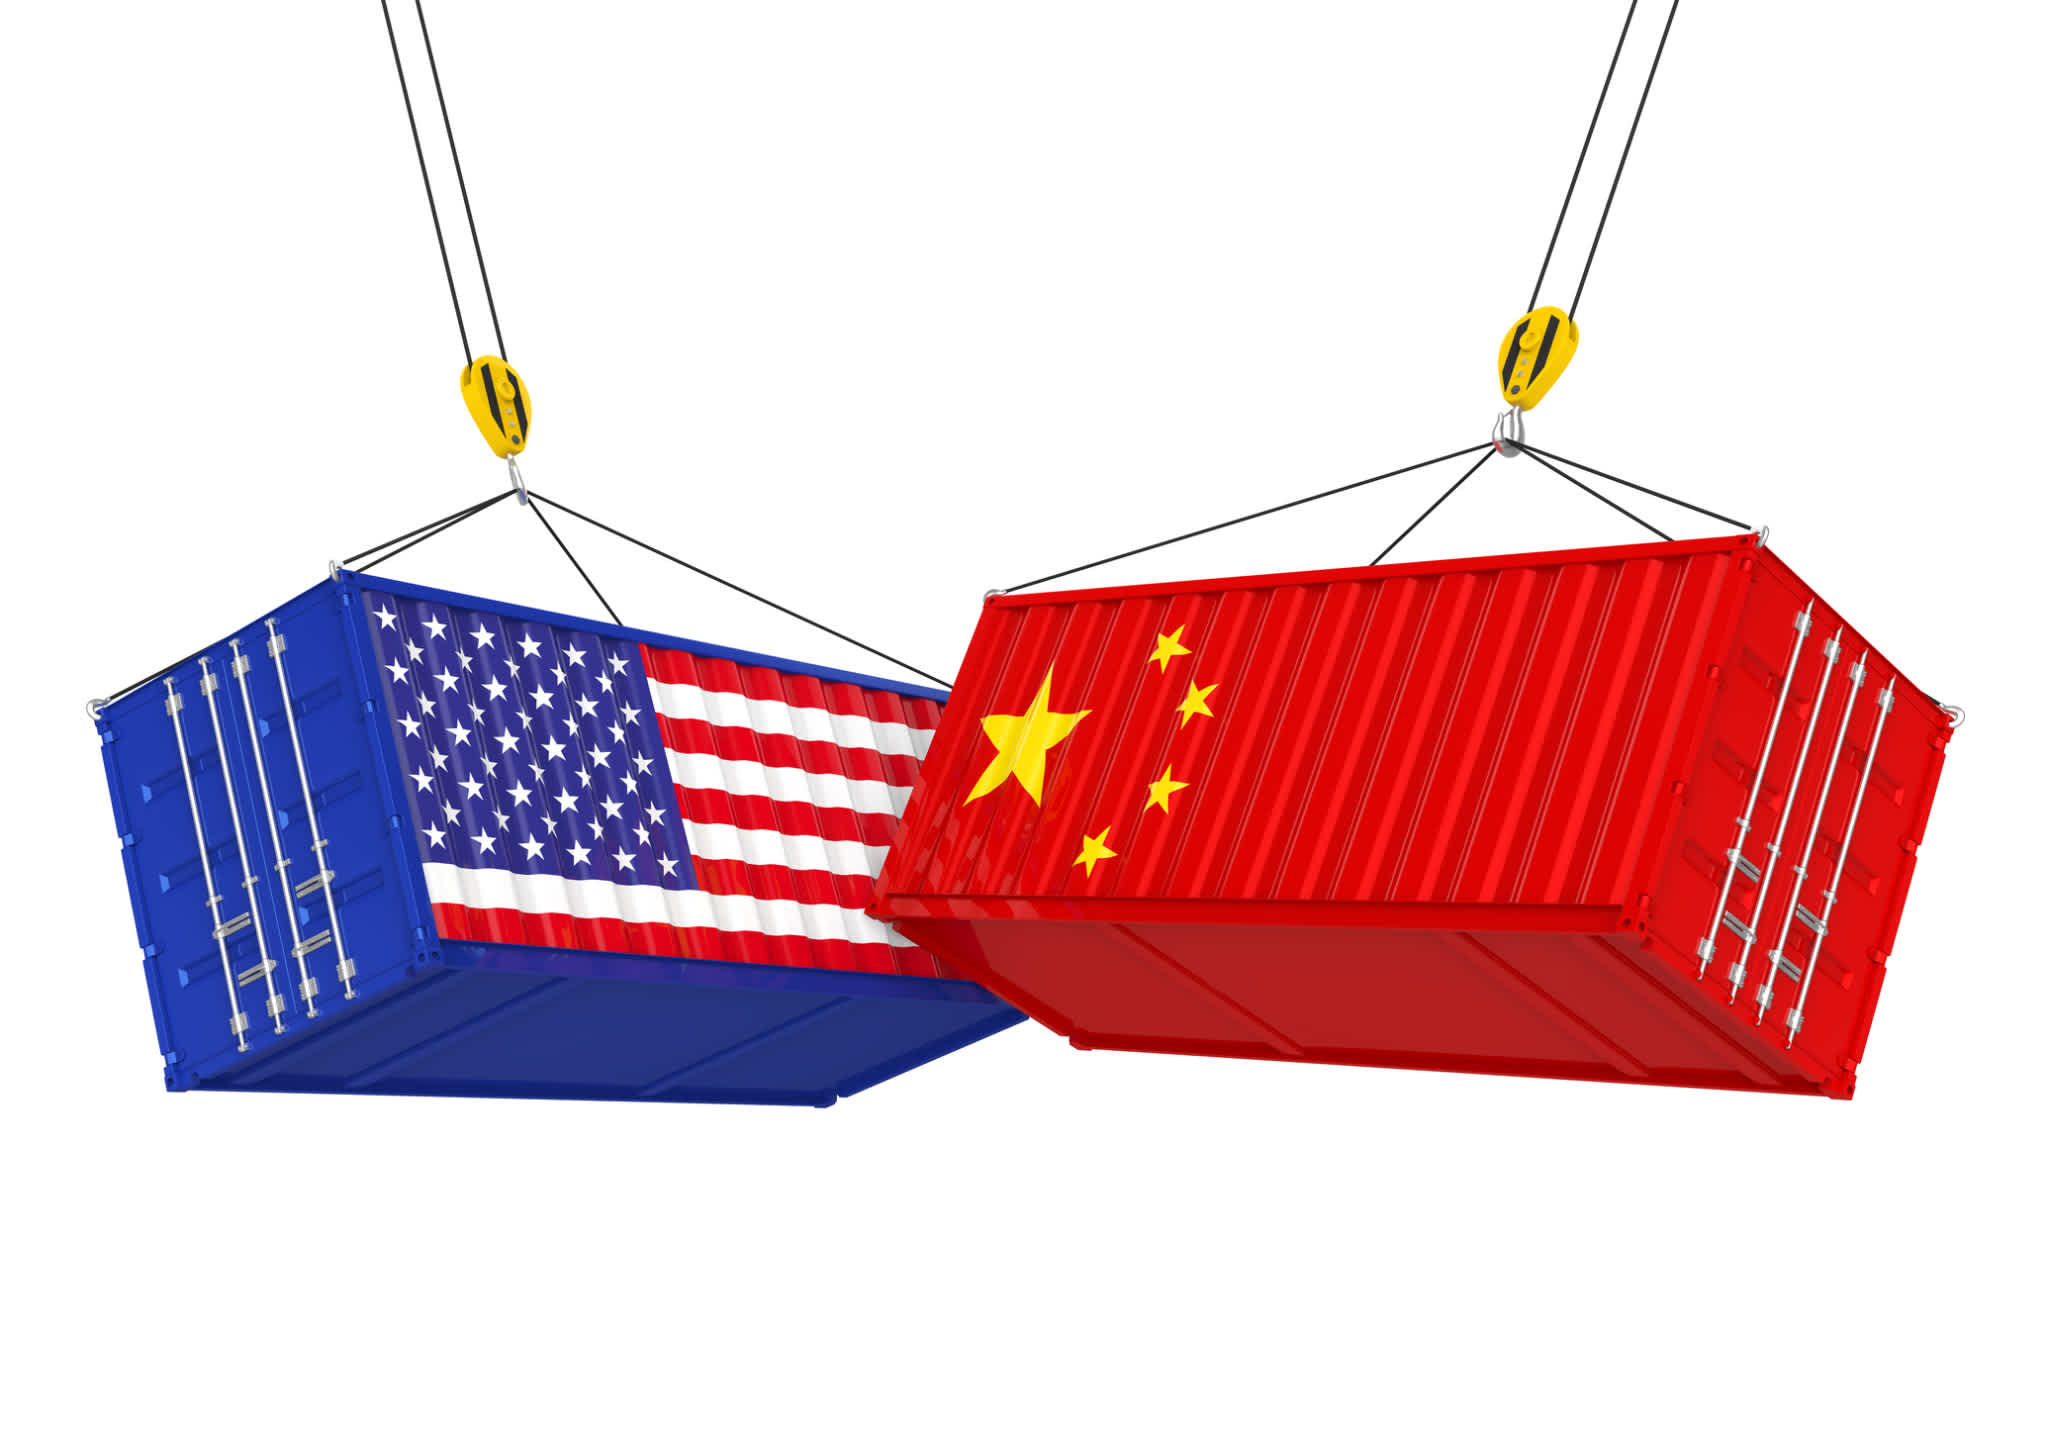 Chinese Import Tariff Impact and Analysis: Part 2